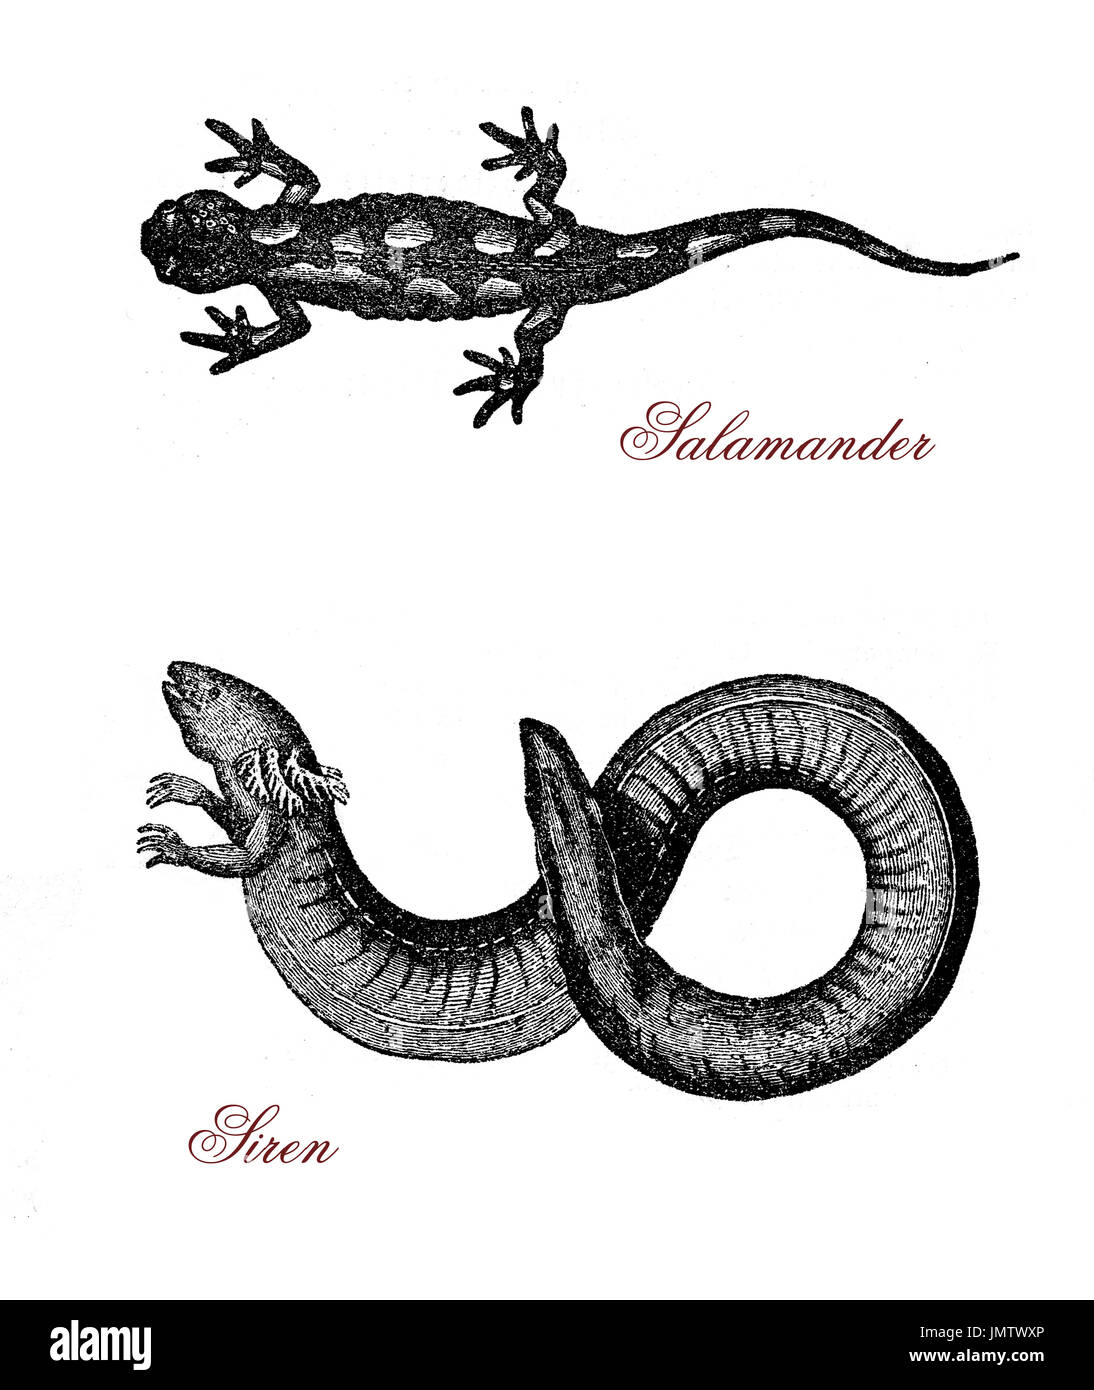 Vintage gravure de sirène, salamandres aquatiques semblables à l'anguille et l'herbivore partiellement, et d'amphibiens, la salamandre lézard noir normalement avec des taches jaune-orange. Banque D'Images